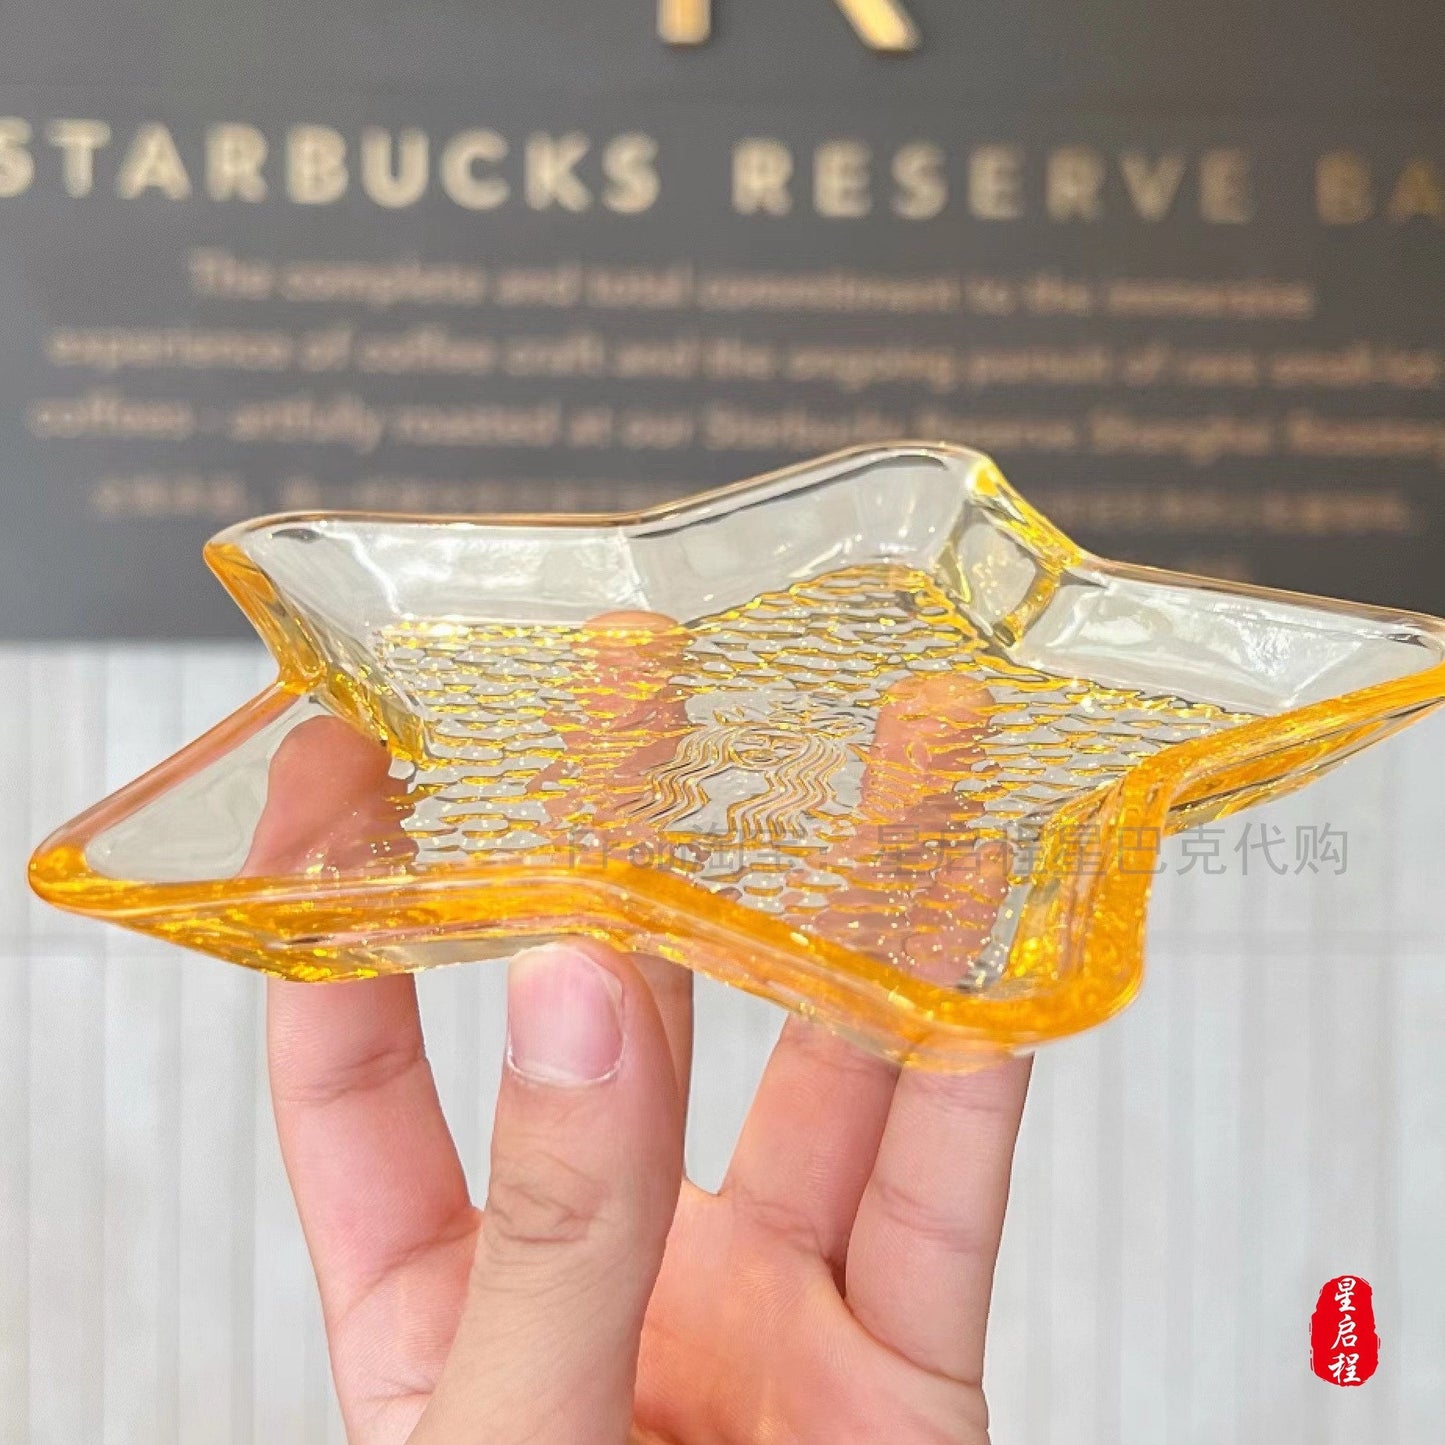 Starbucks China 2021 Christmas glass plate set